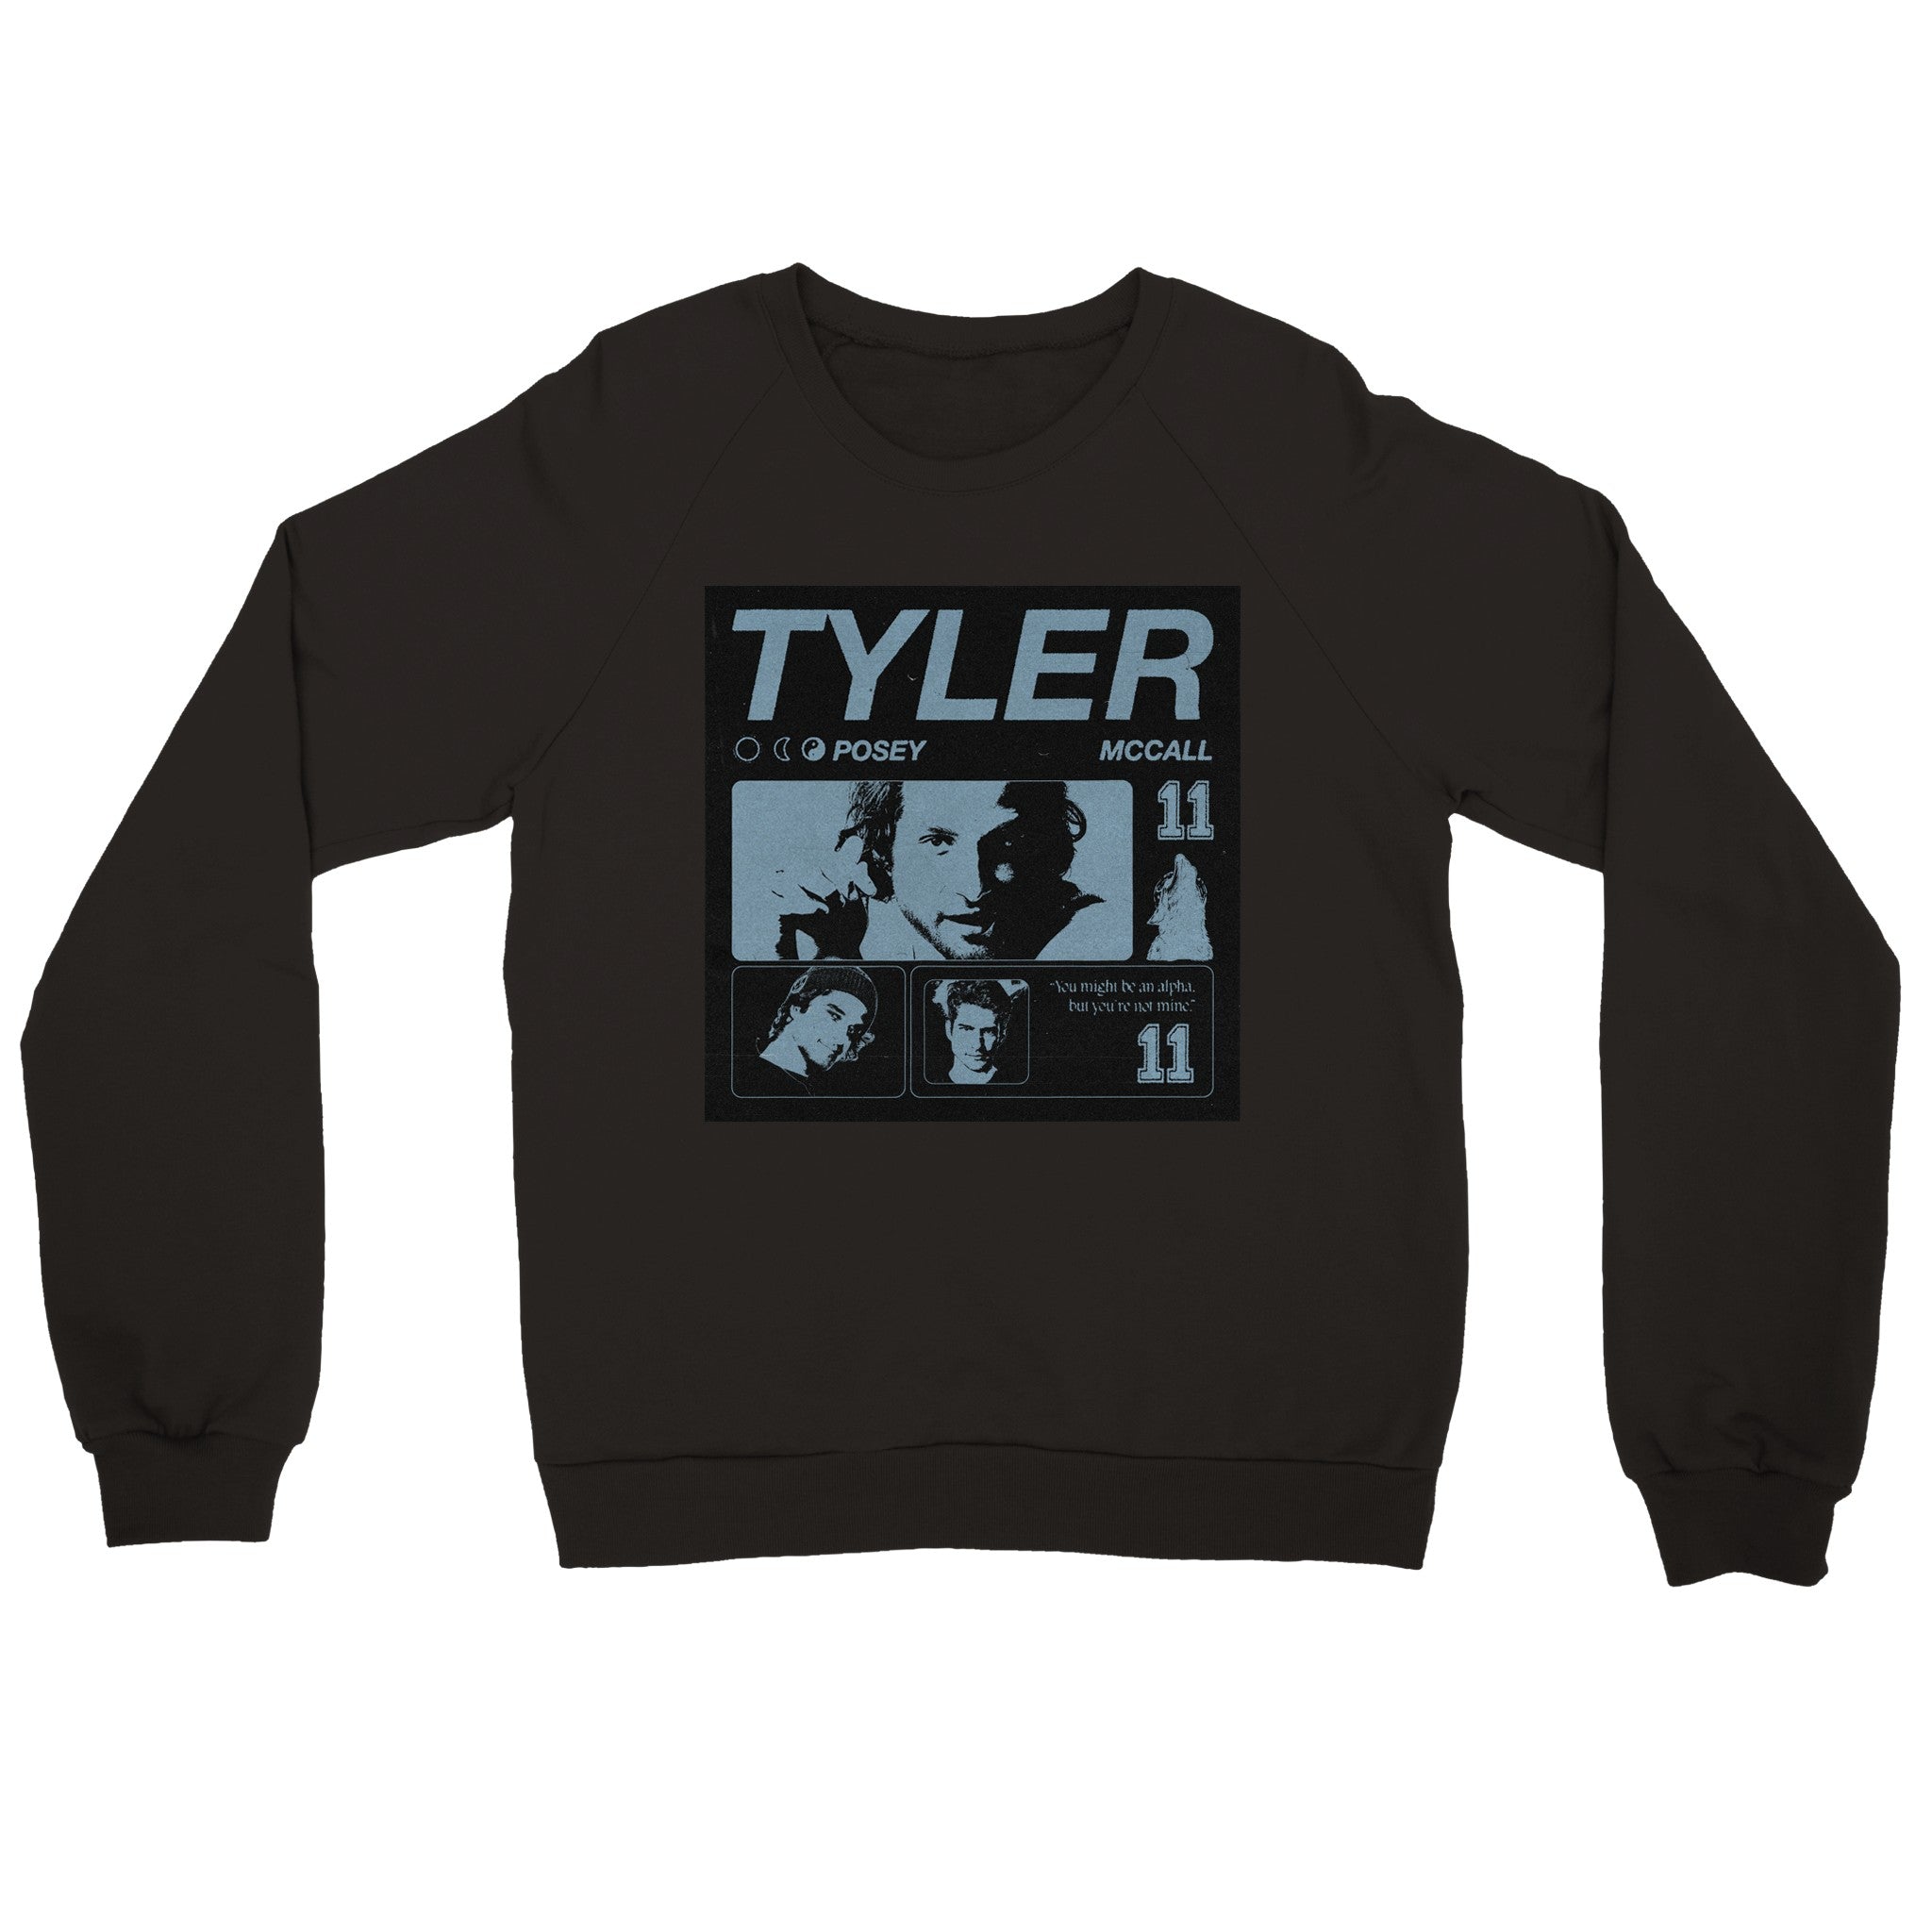 TYLER POSEY sweatshirt - MCCALL